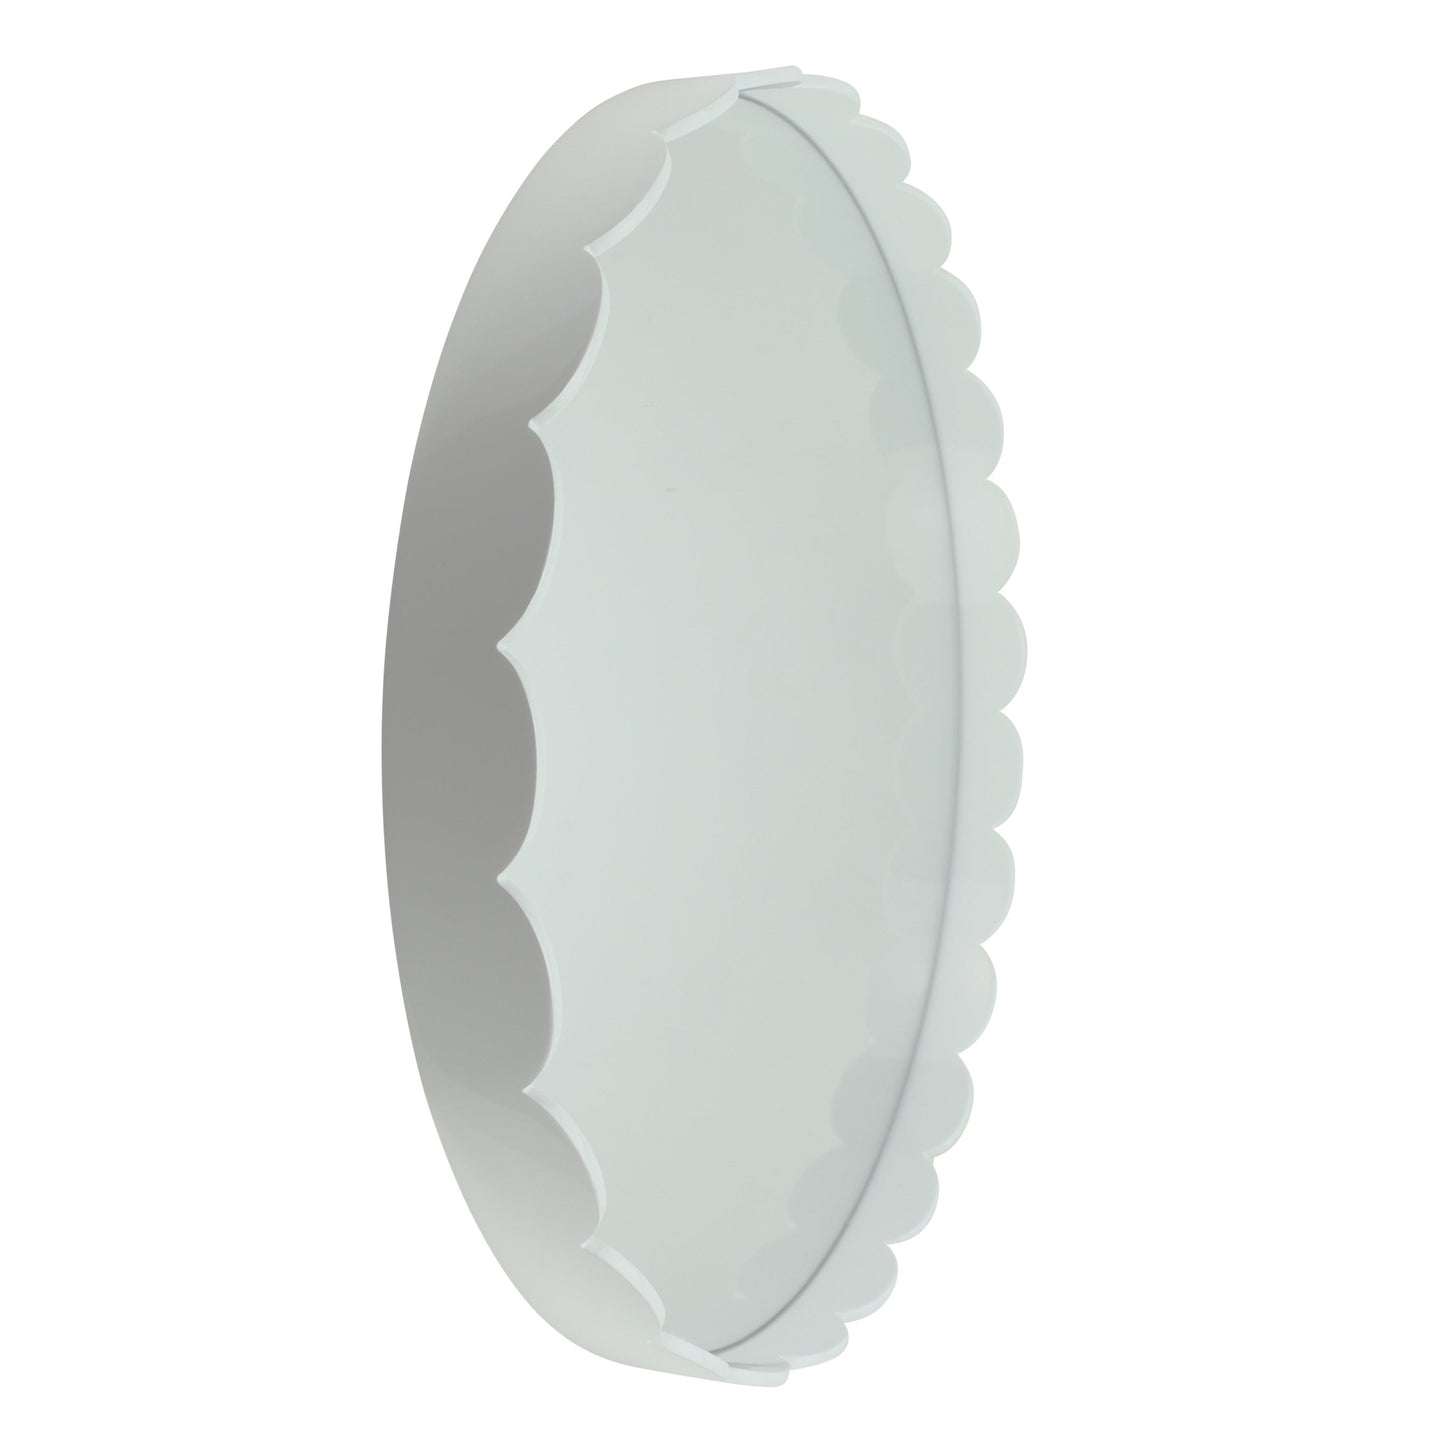 Witte grote geschulpte ronde spiegel